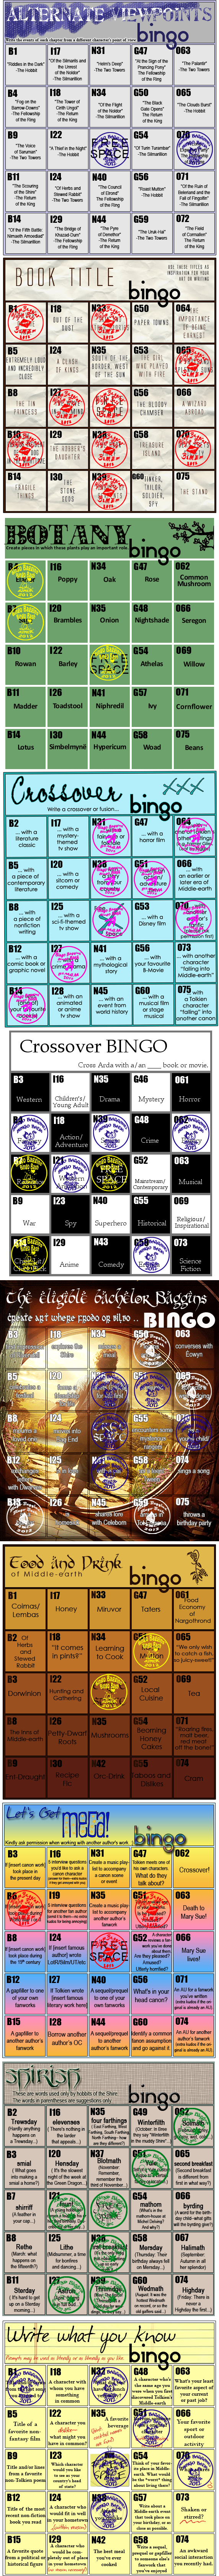 Lbilover's Bingo Cards